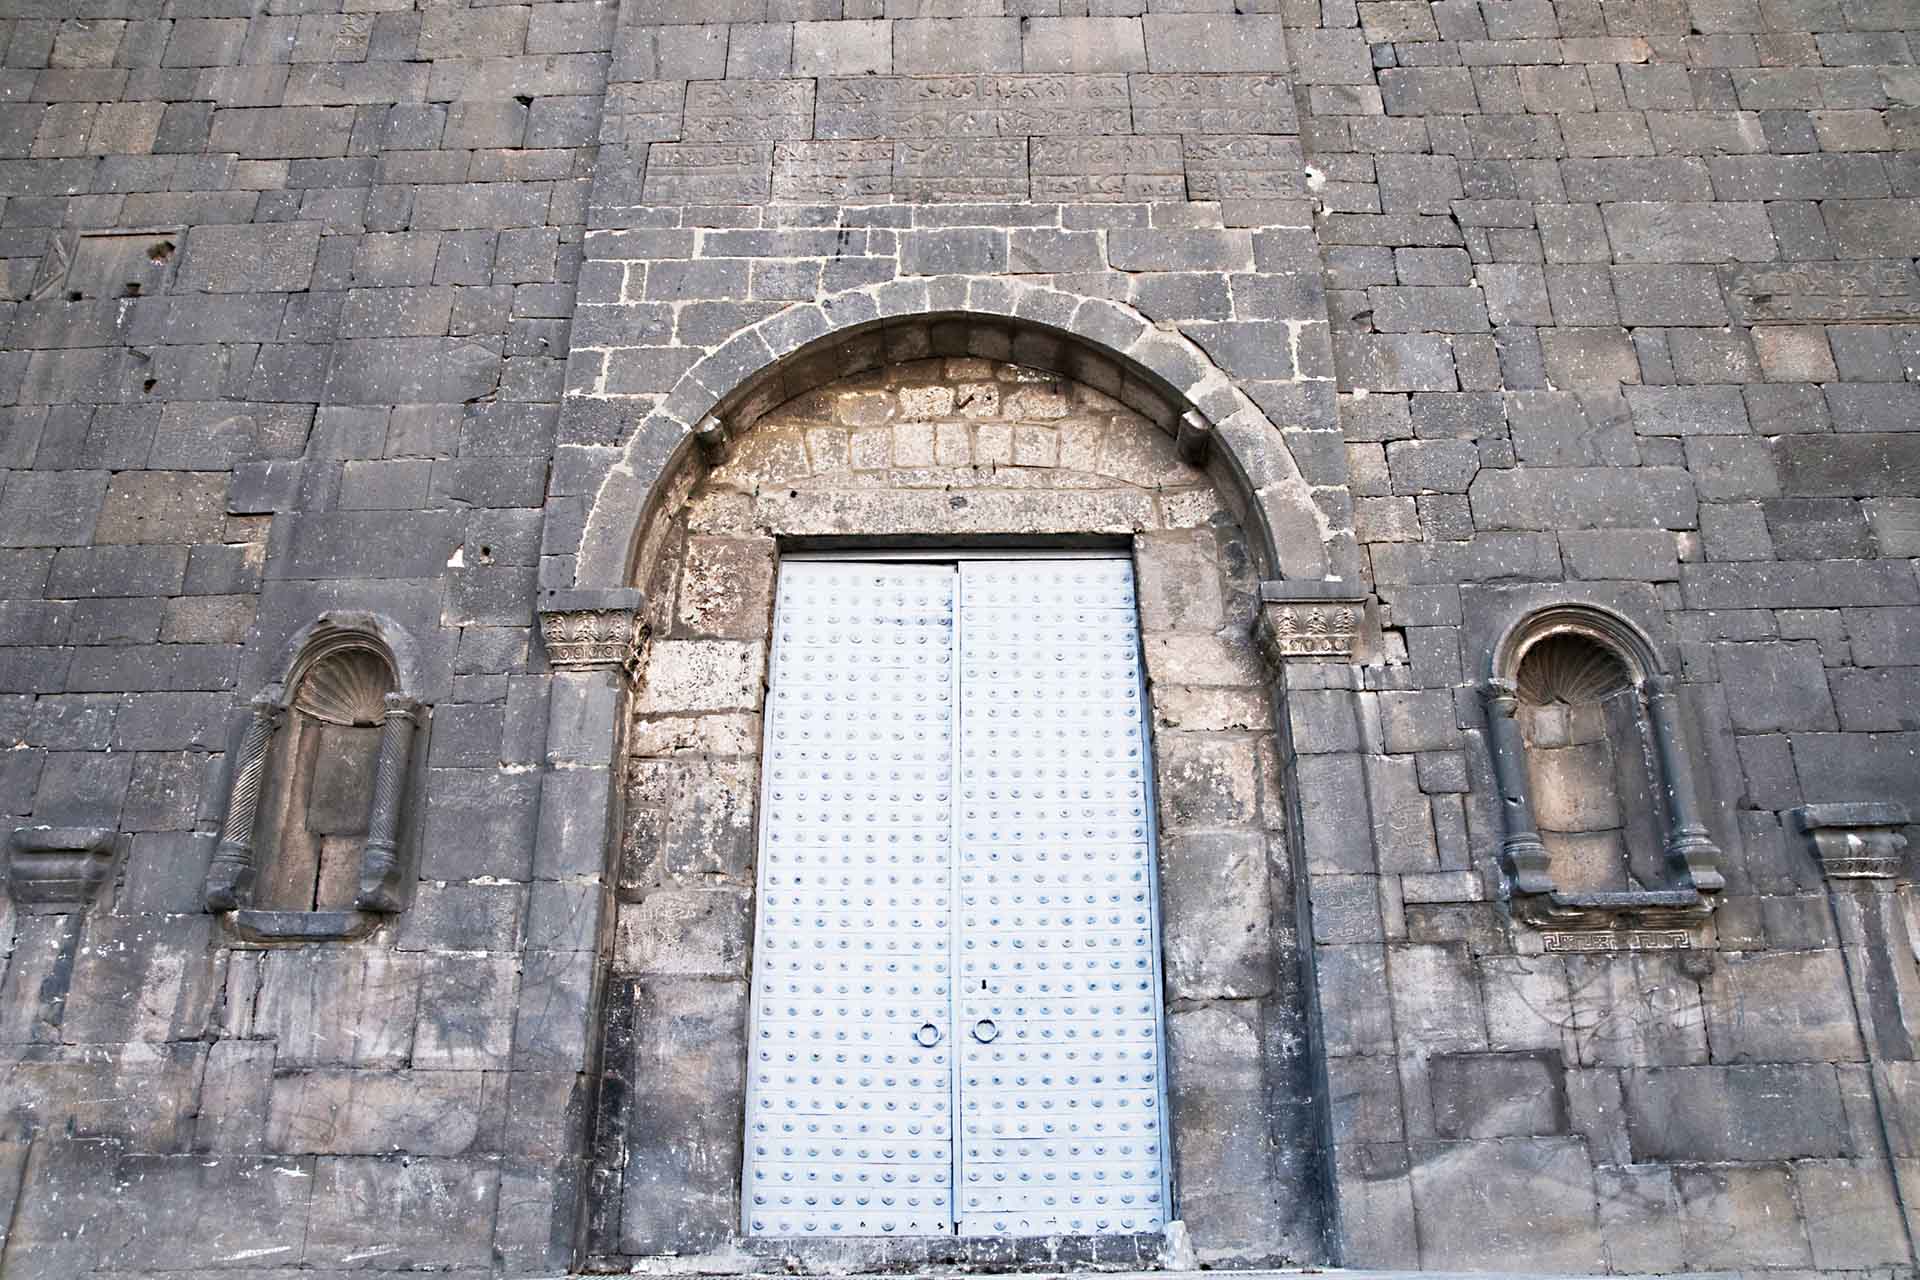 Chiêm ngưỡng vẻ kỳ vĩ của Diyarbakir - Tường thành dài thứ 2 thế giới bị ảnh hưởng bởi động đất tại Thổ Nhĩ Kỳ - Ảnh 12.